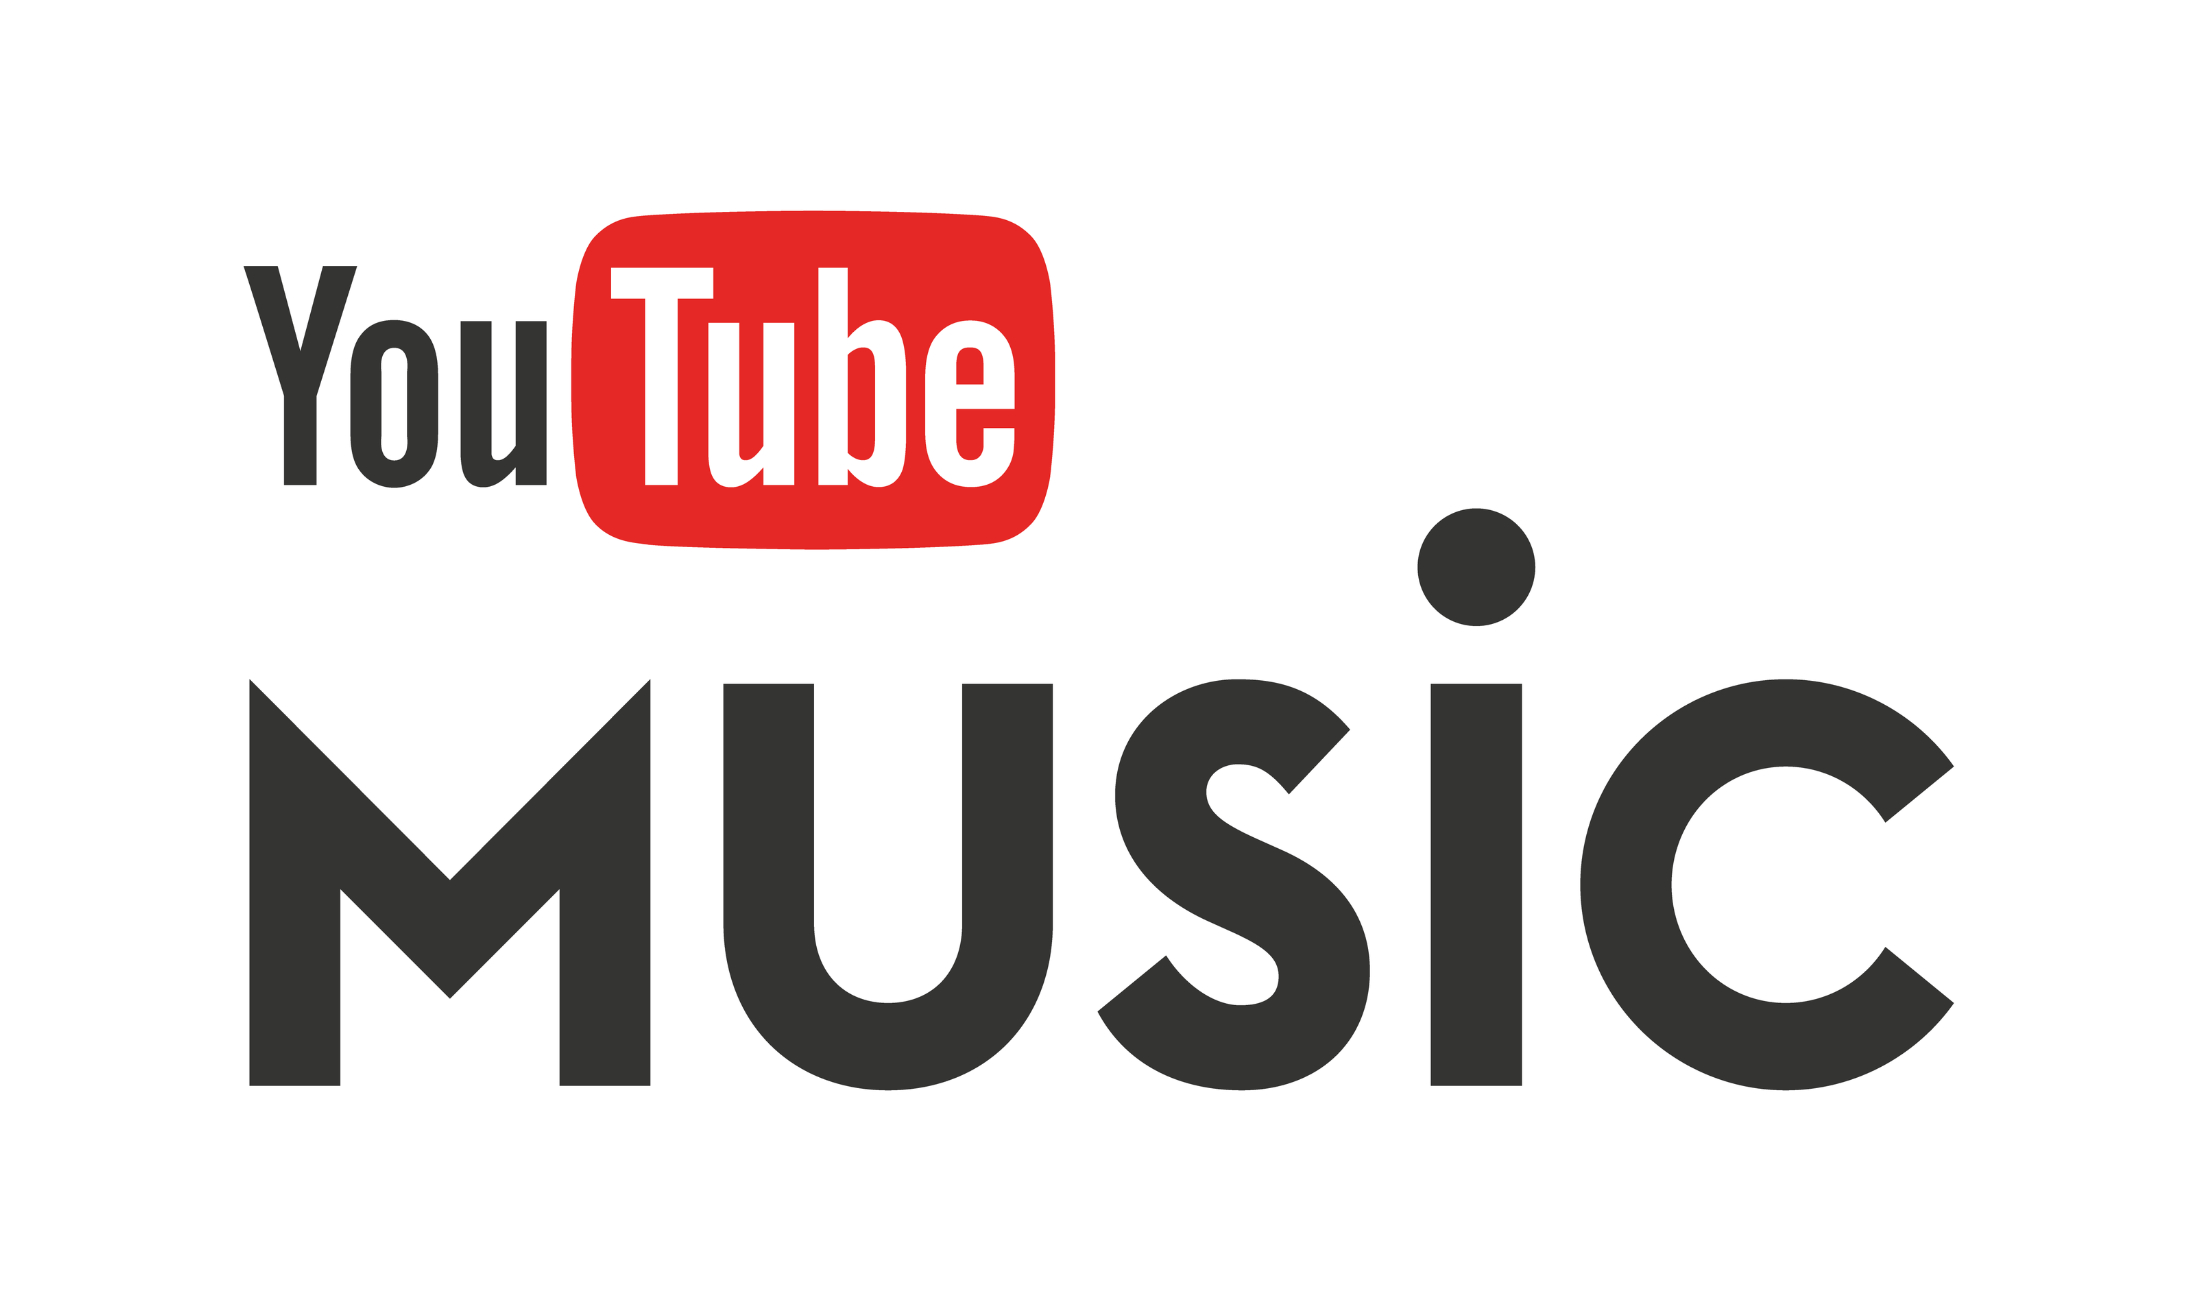 YouTube startet eigenen kostenpflichtigen Musikdienst